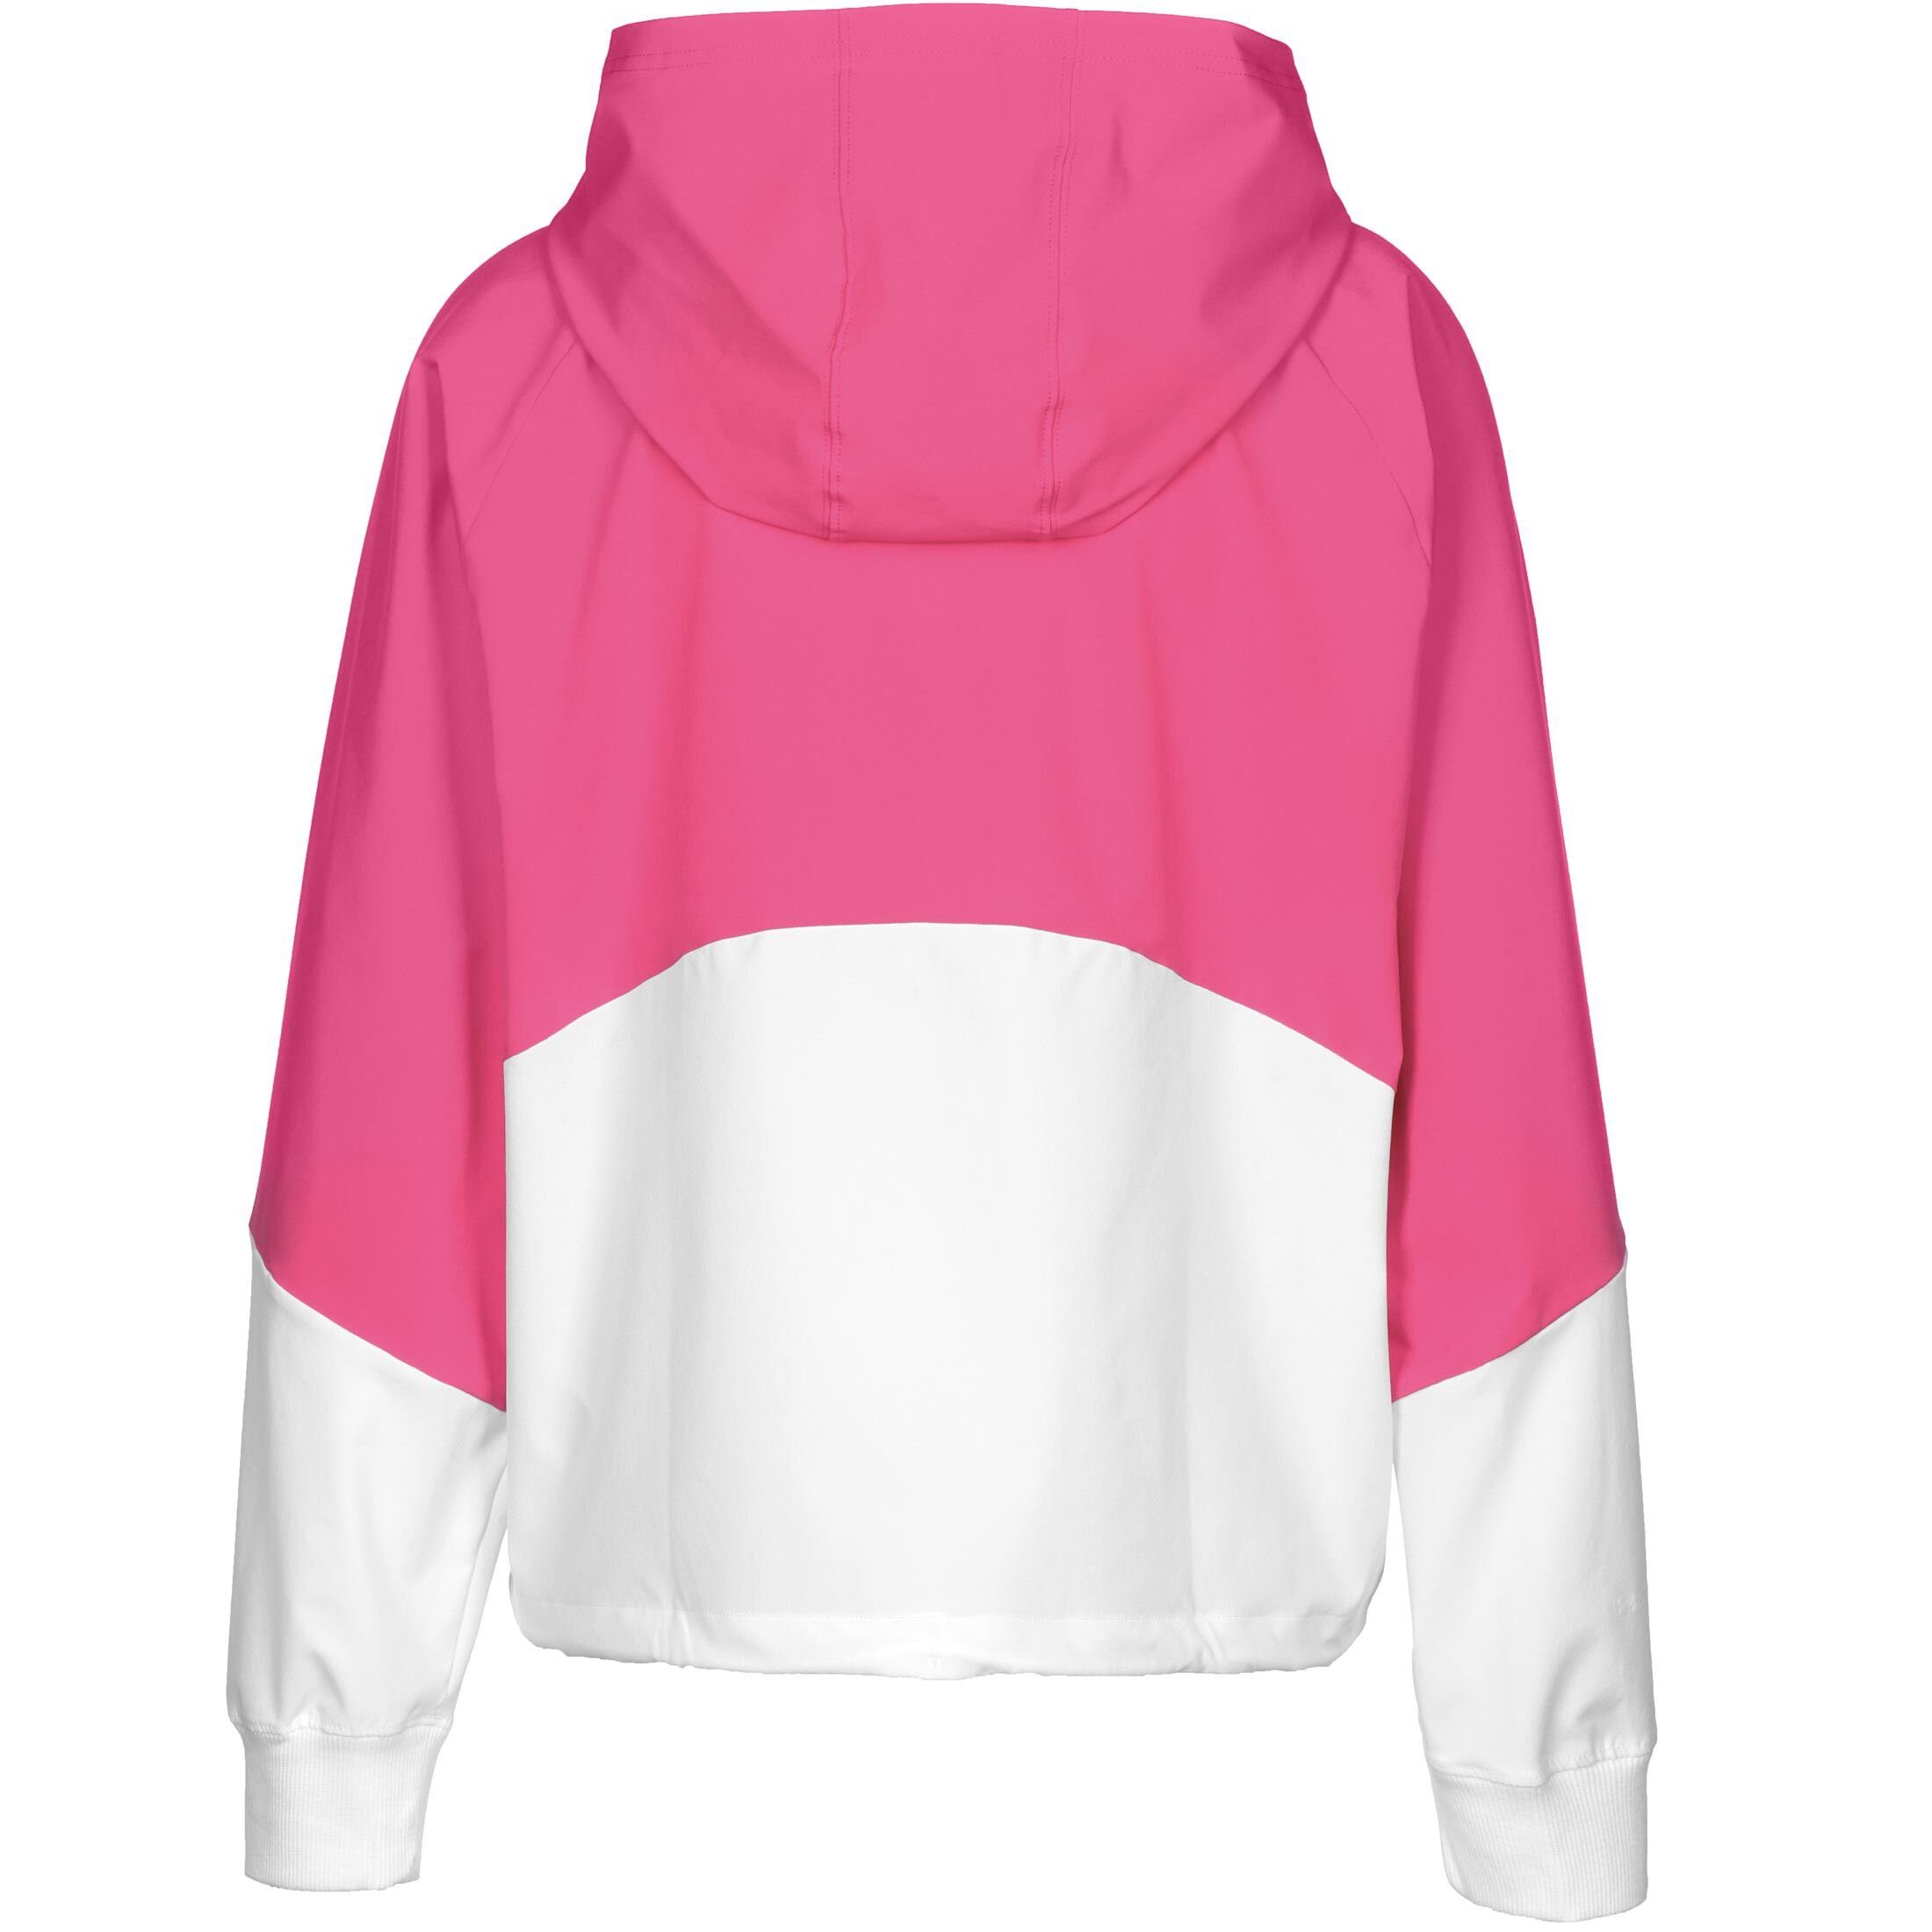 Damen weiß pink Jacke Woven Armour® Trainingsjacke / Under